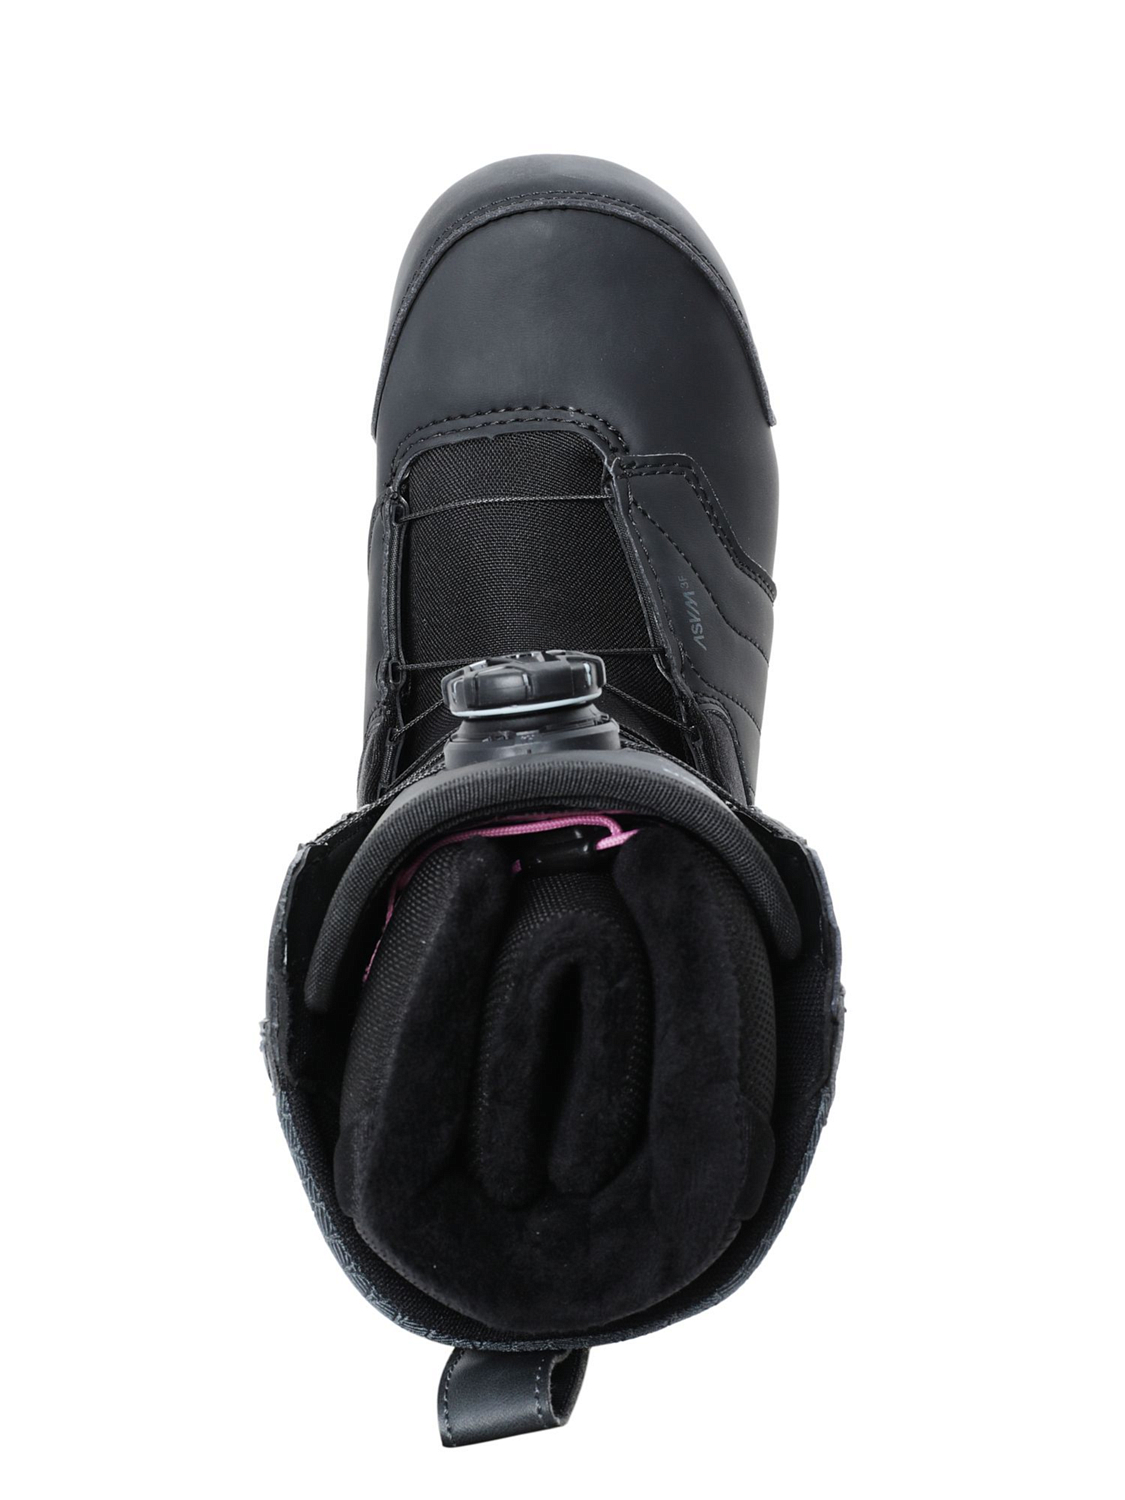 Ботинки для сноуборда NIDECKER Onyx Black